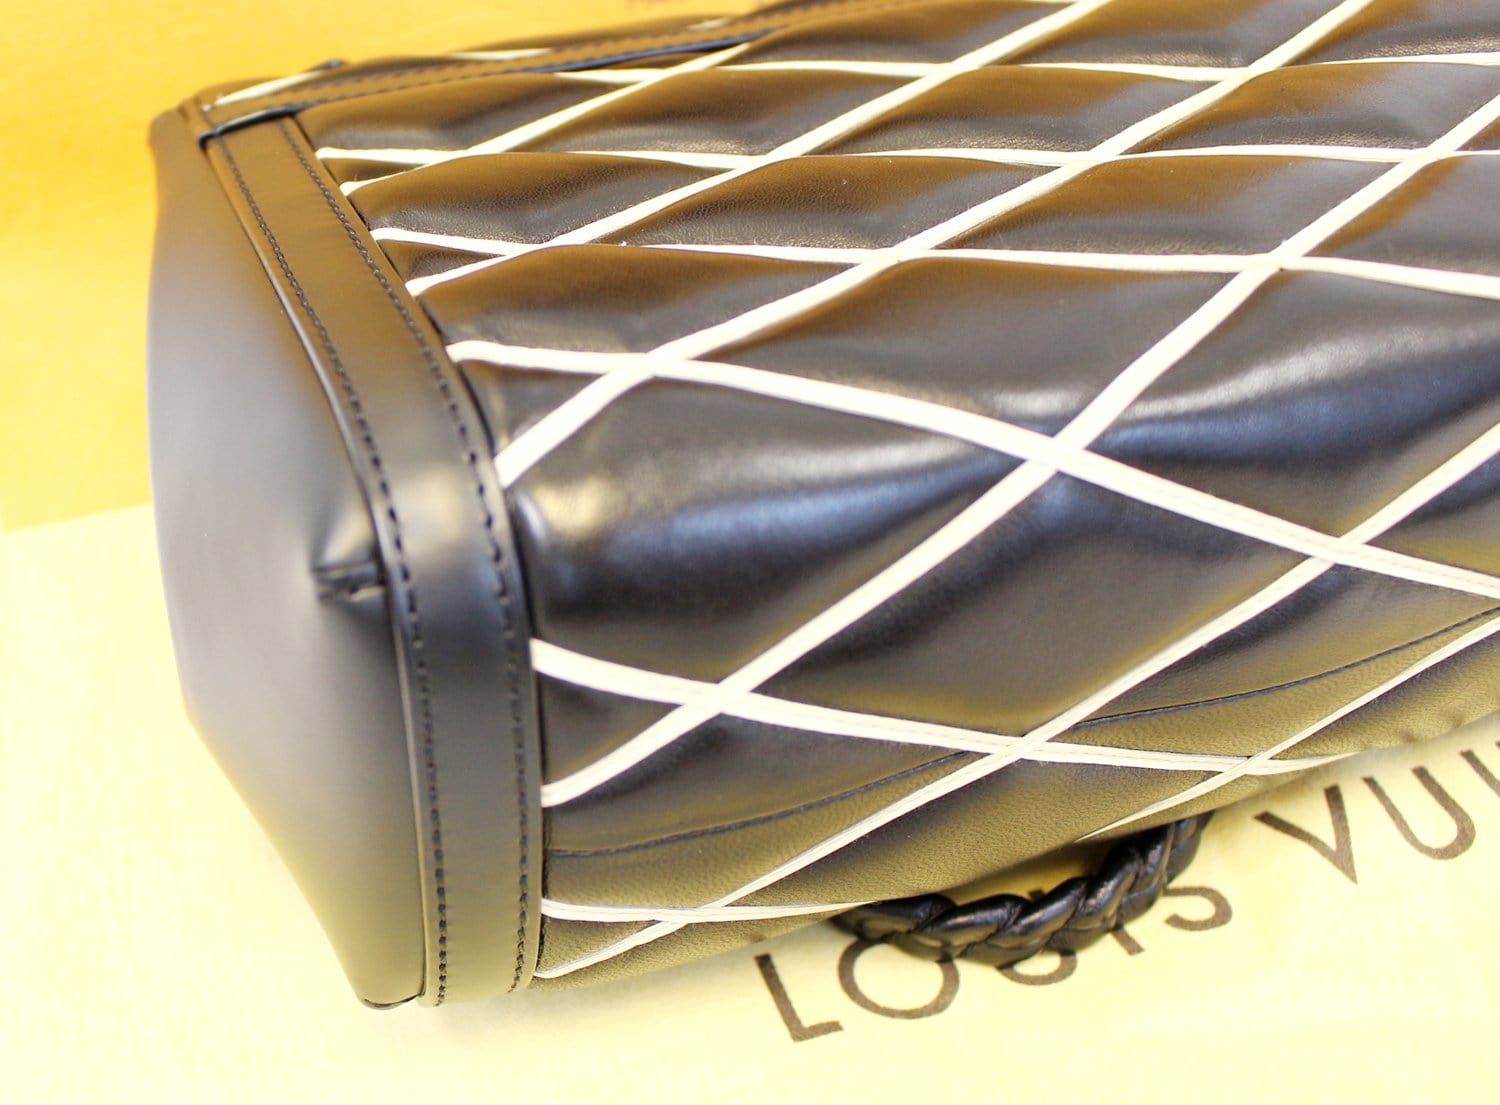 Louis Vuitton Beige/Black Leather Malletage Pochette Flap Bag Louis Vuitton